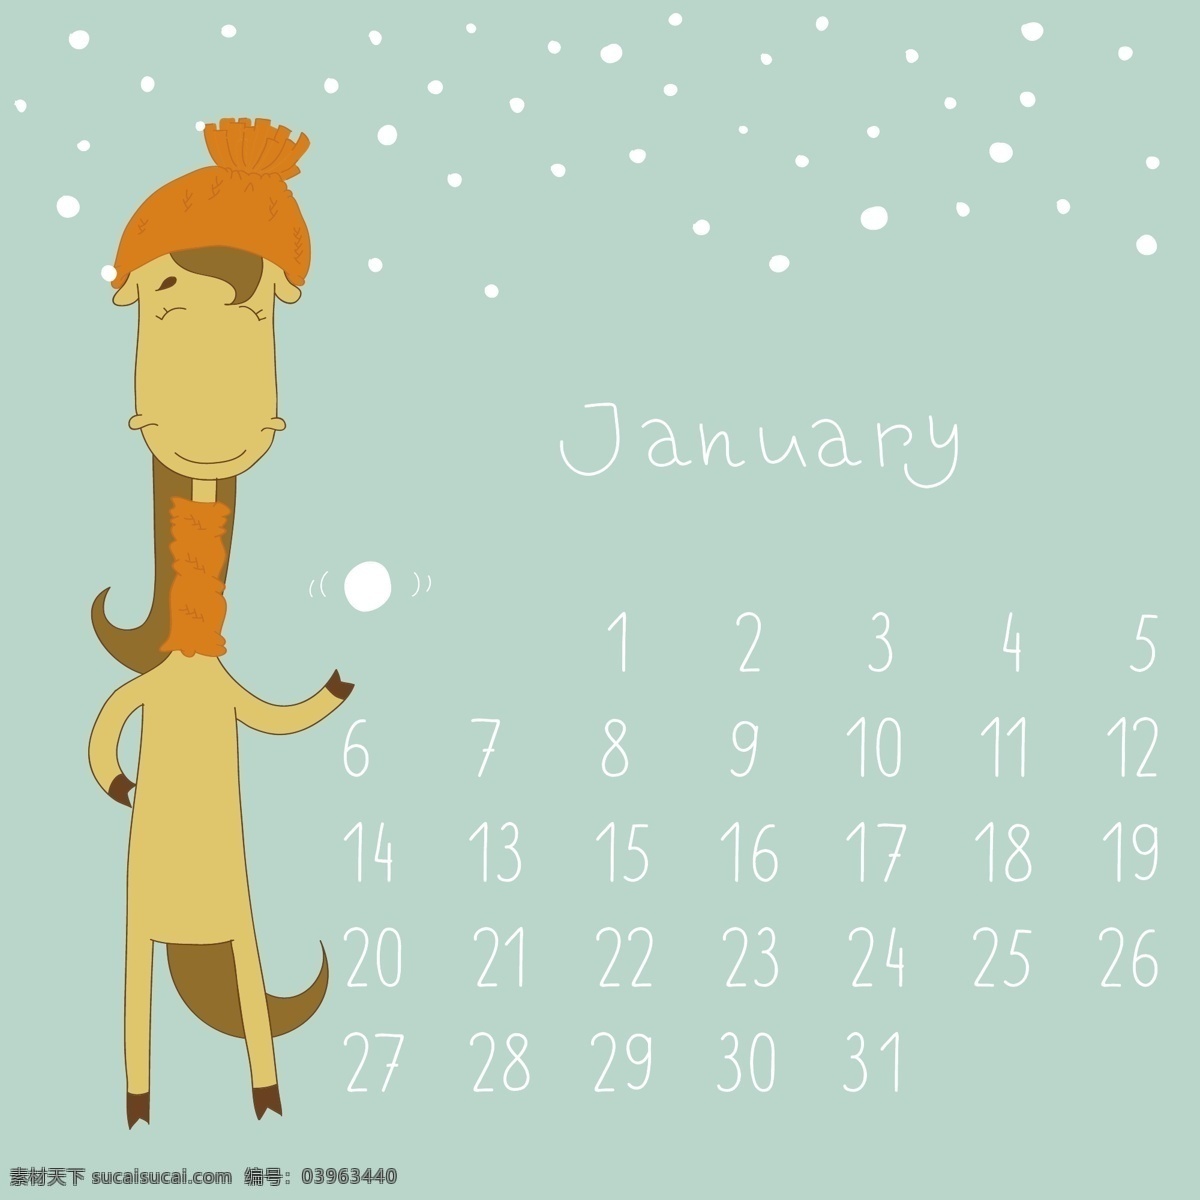 可爱 的卡 通 一月 月历 矢量 2013 卡通 卡通可爱 日历 矢量节日 节日素材 其他节日